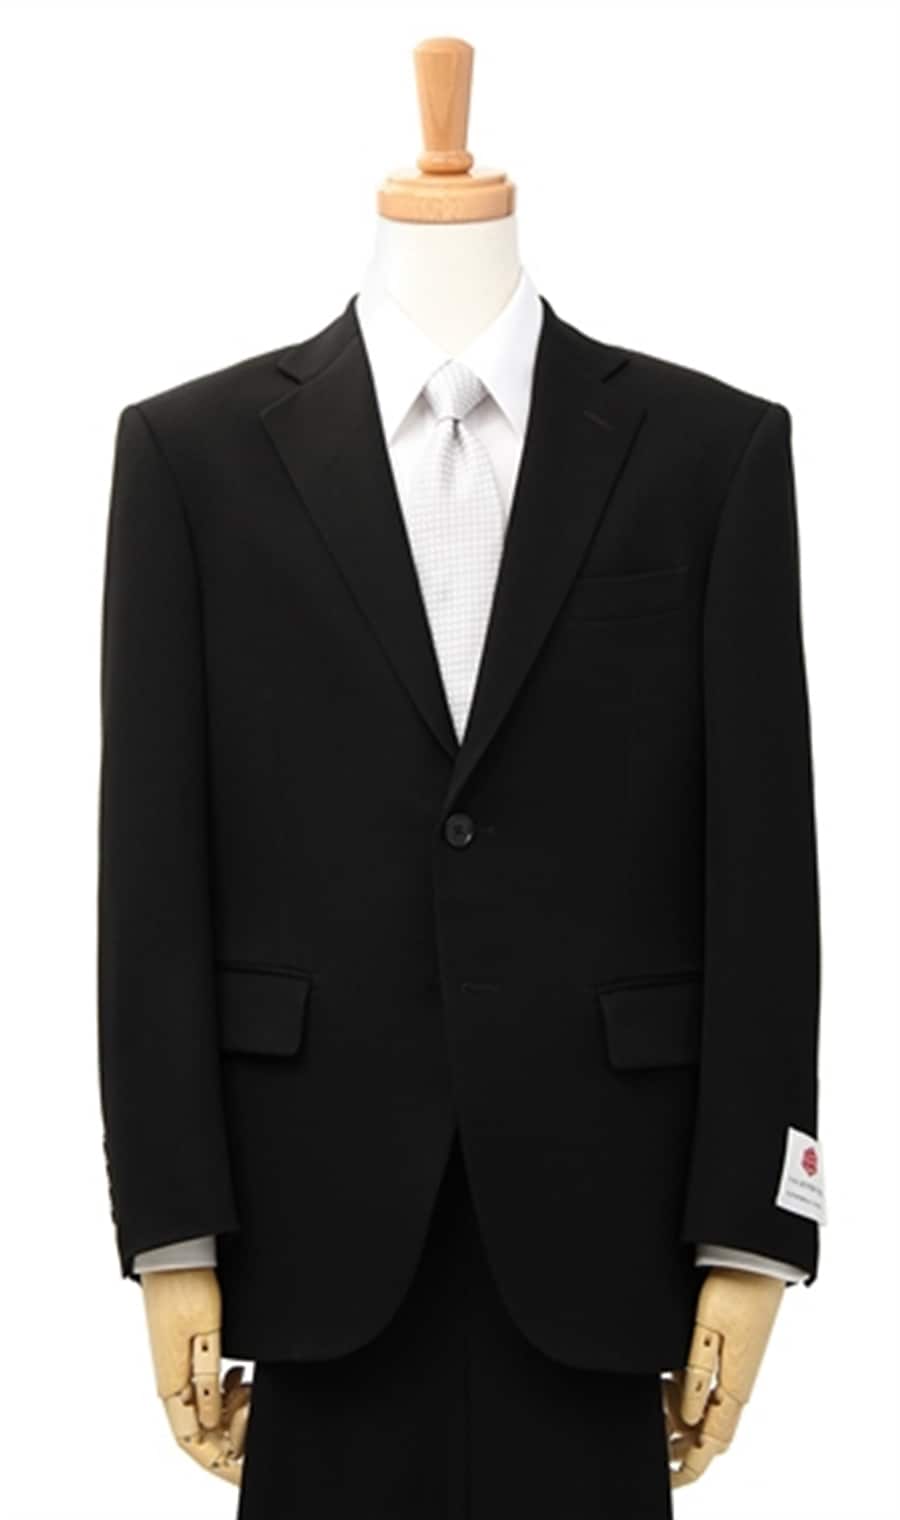 C.D.K. SUPER TEX スーツ メンズ 礼服 結婚式 冠婚葬祭スーツ